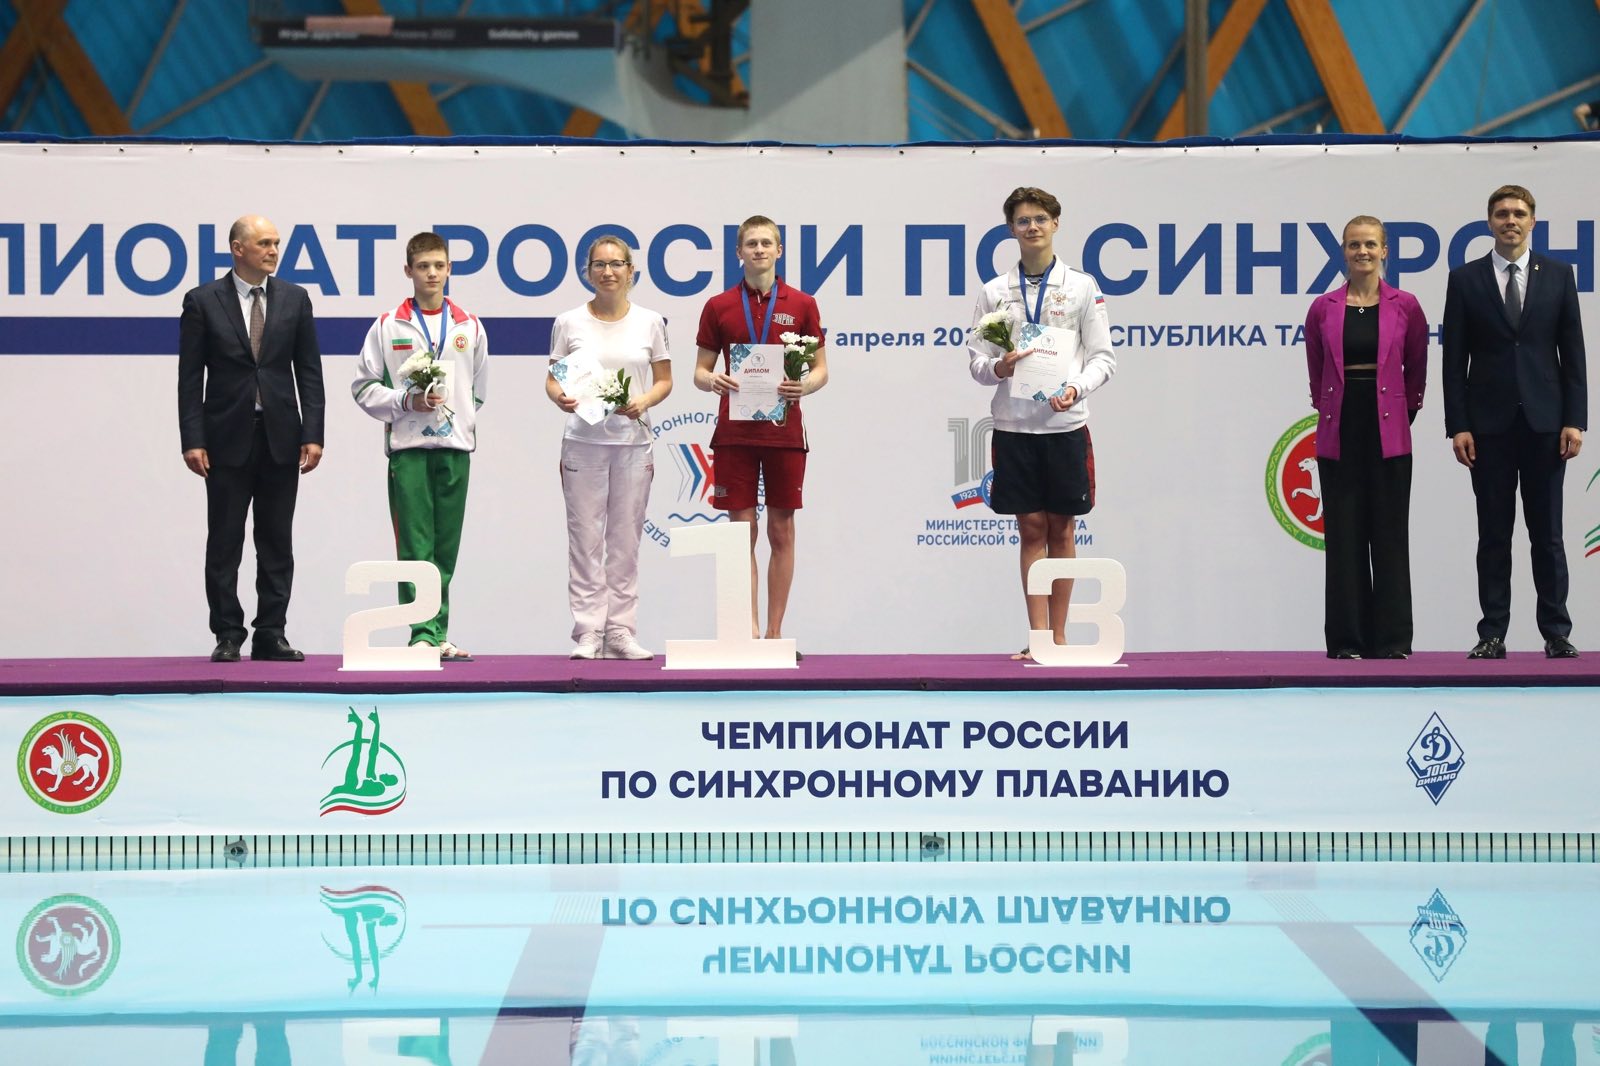 Чемпионат россии по плаванию казань результаты